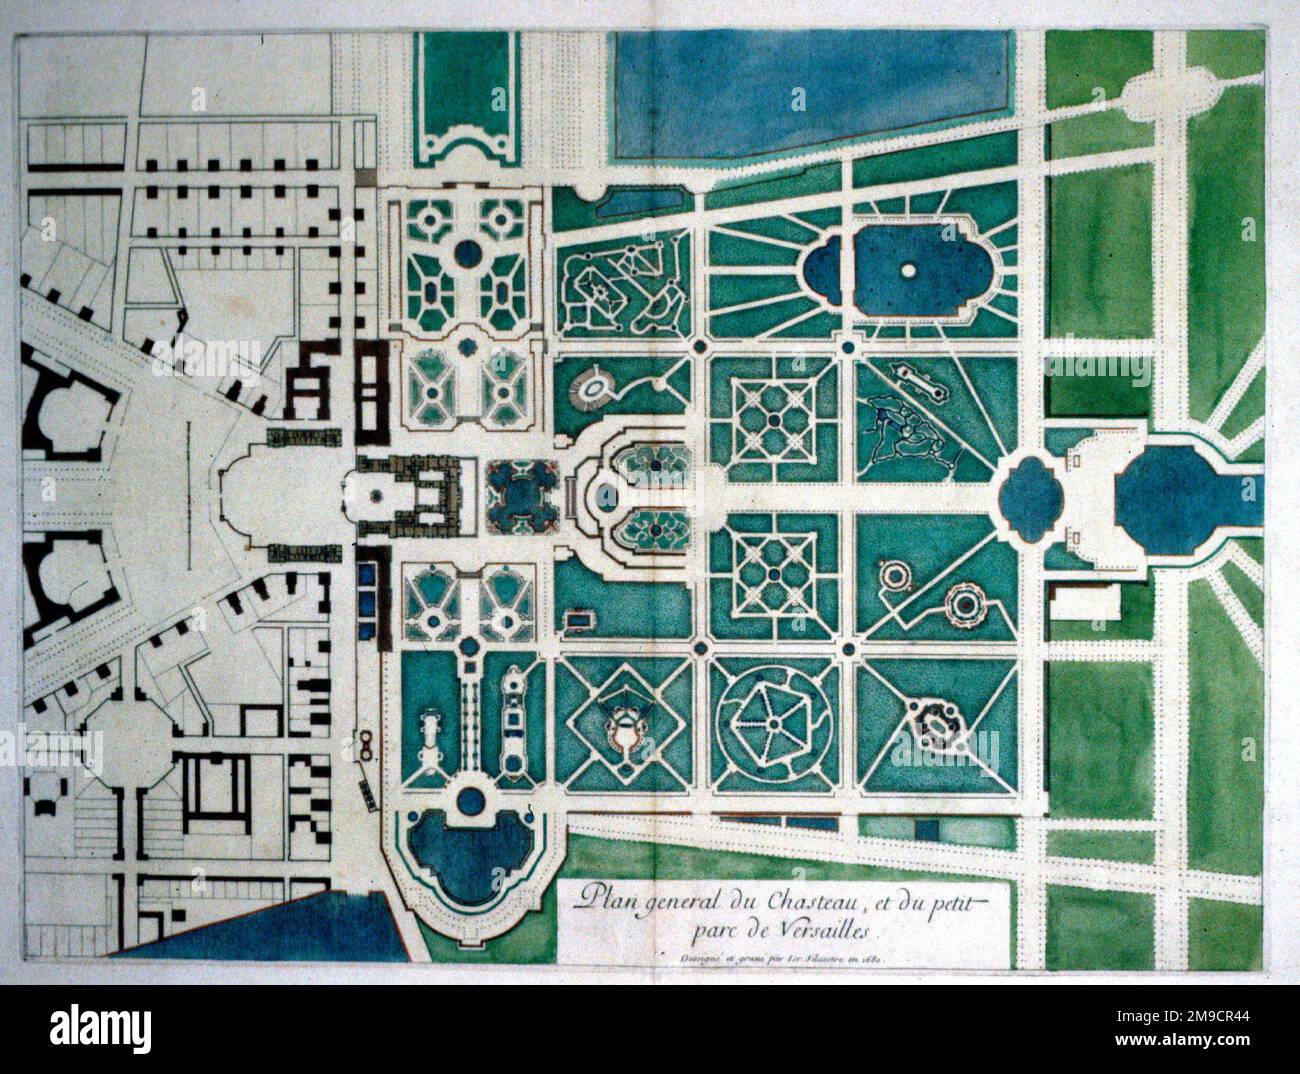 Plan général du Château et des jardins de Versailles, France Banque D'Images